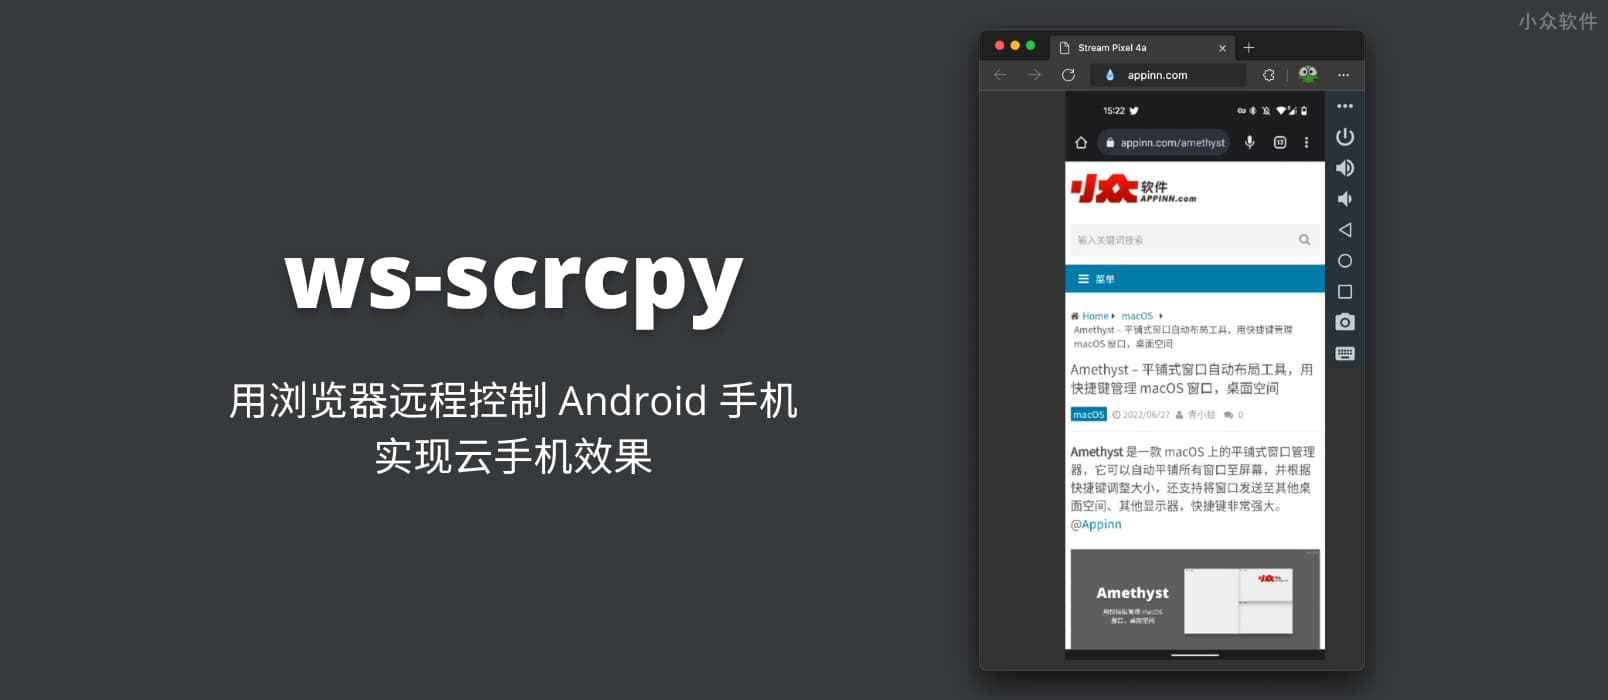 ws-scrcpy – 用浏览器远程控制 Android 手机，实现云手机效果